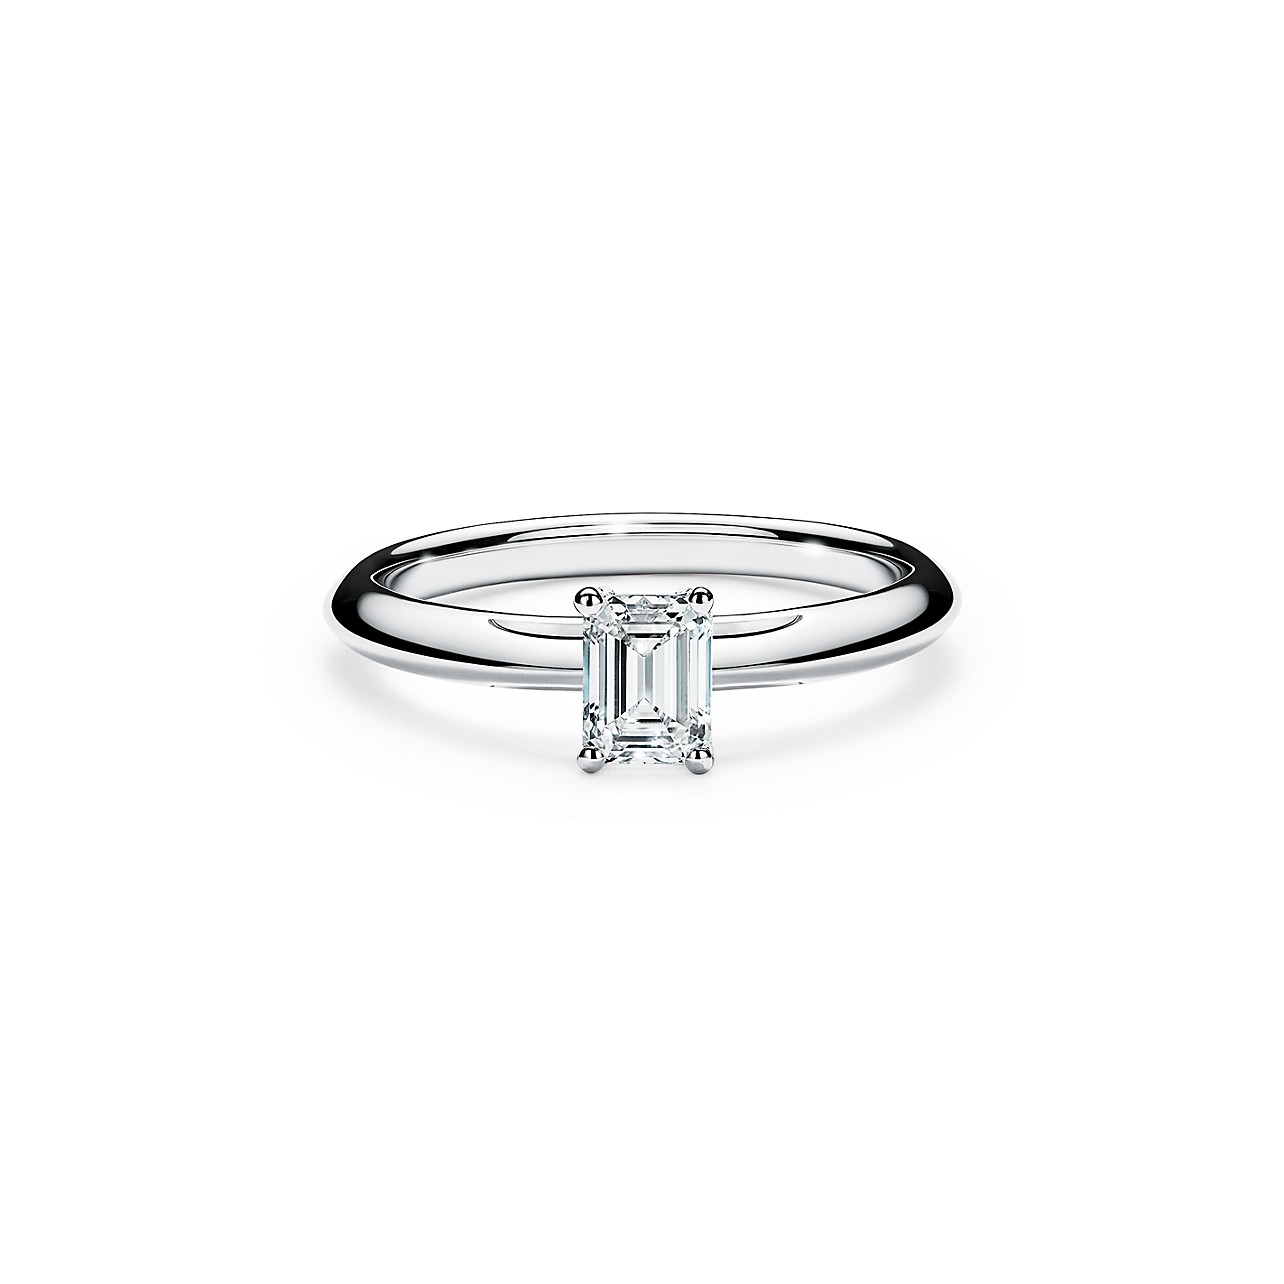 ティファニー ハーモニー ダイヤモンド リング サイドストーン - Tiffany & Co.（ティファニー）の婚約指輪(エンゲージメントリング)